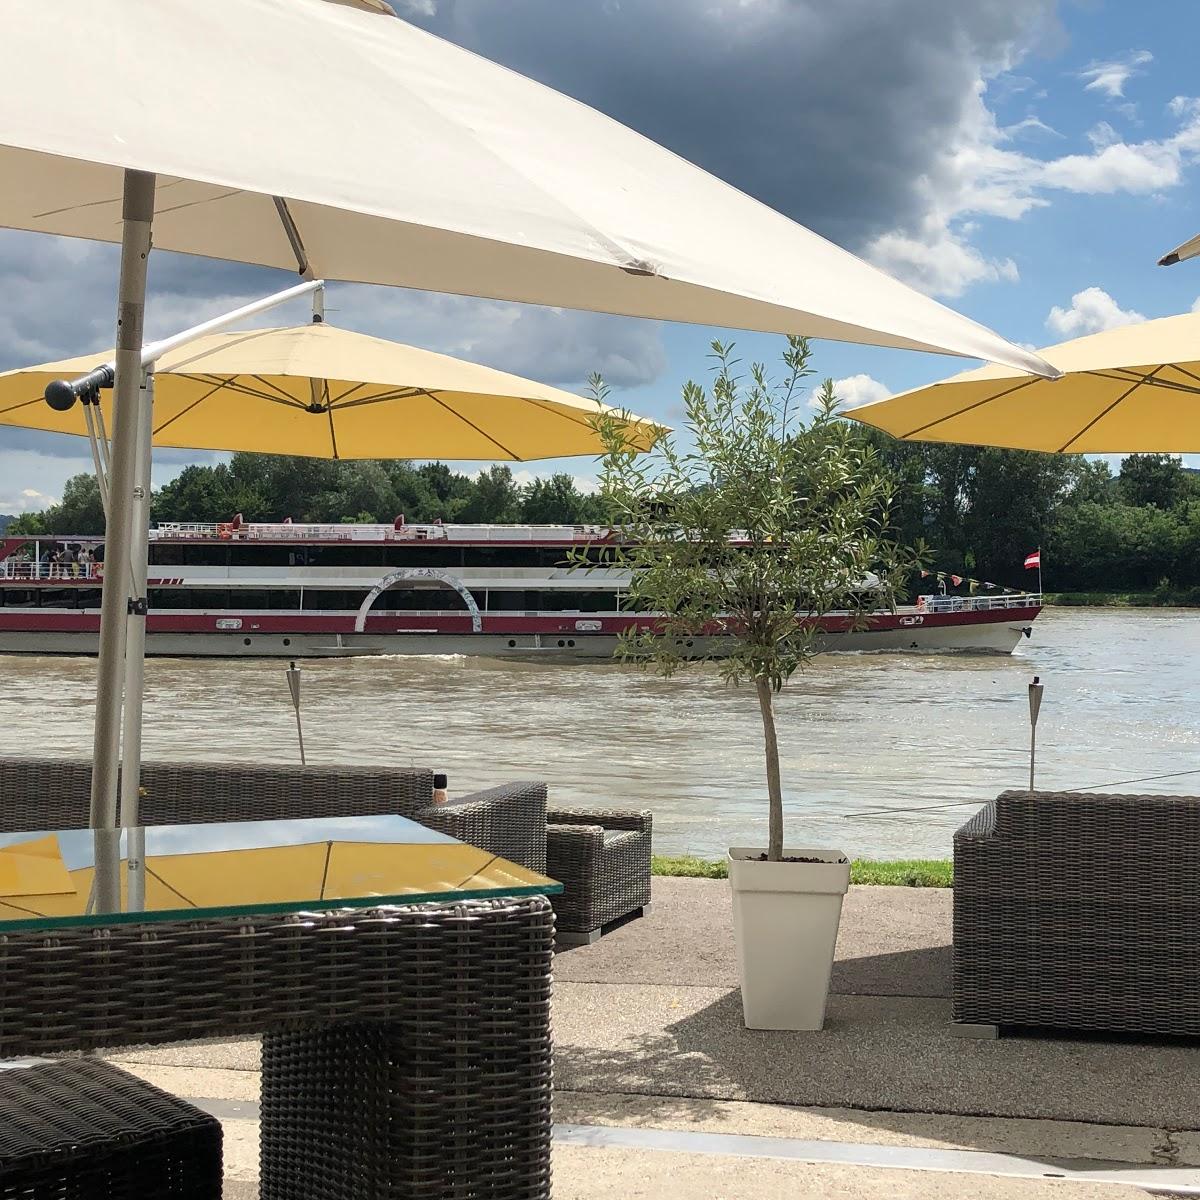 Restaurant "Wellen.Spiel" in Krems an der Donau